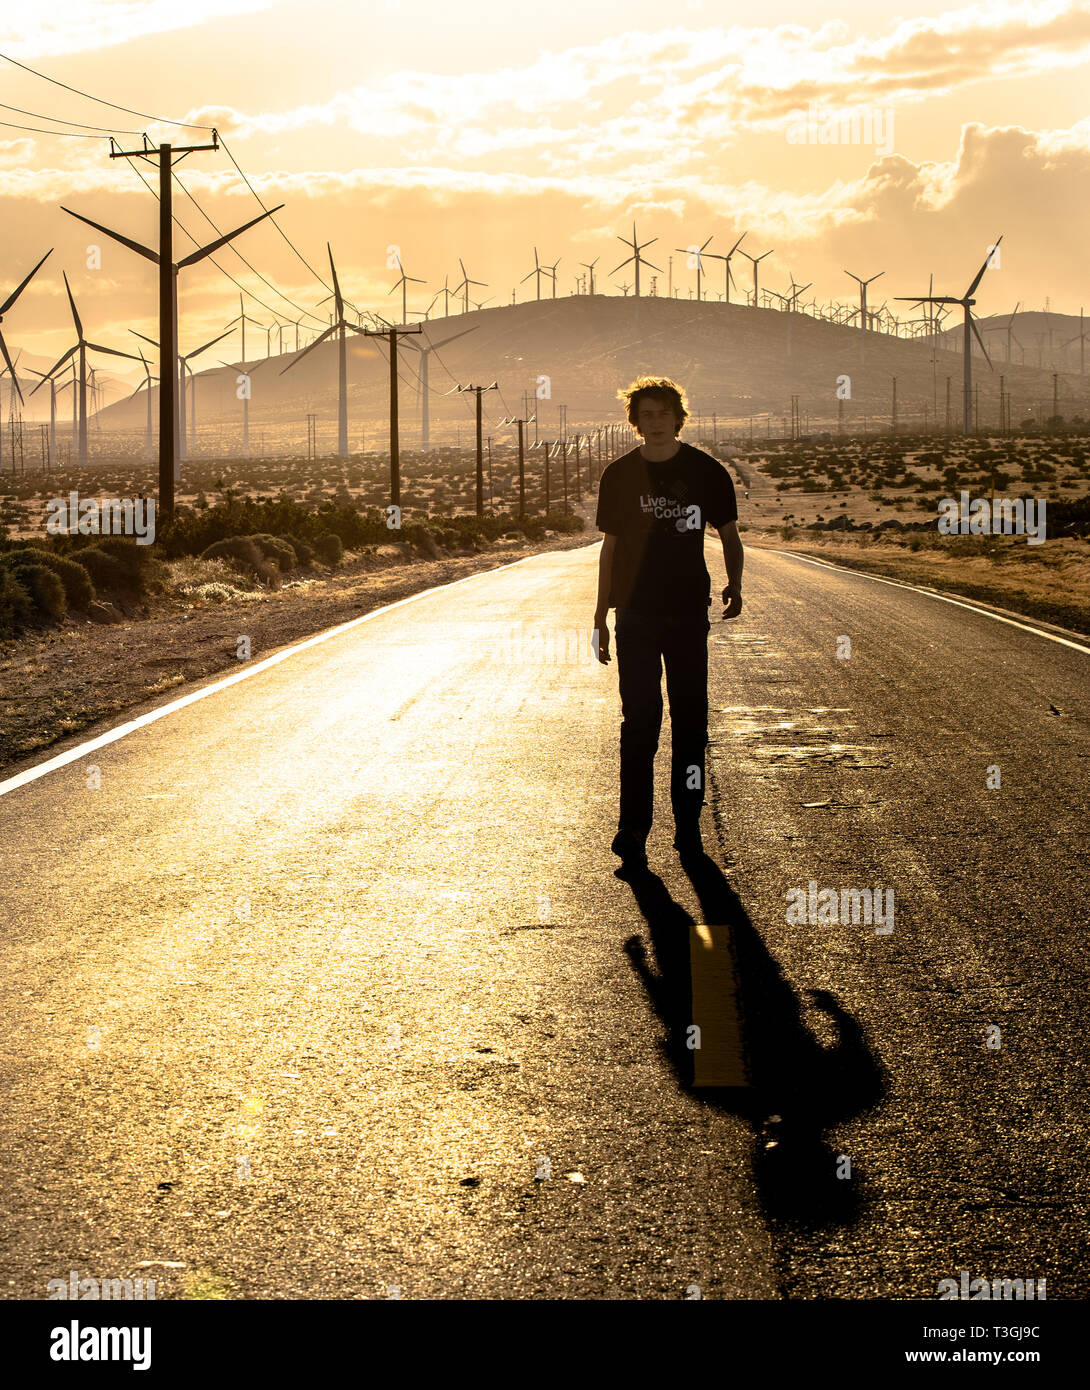 Le dirigeant d'une figure sur une autoroute du désert est éclipsé par une heure d'or couverte de moulins à vent paysage près de Palm Springs en Californie. Banque D'Images